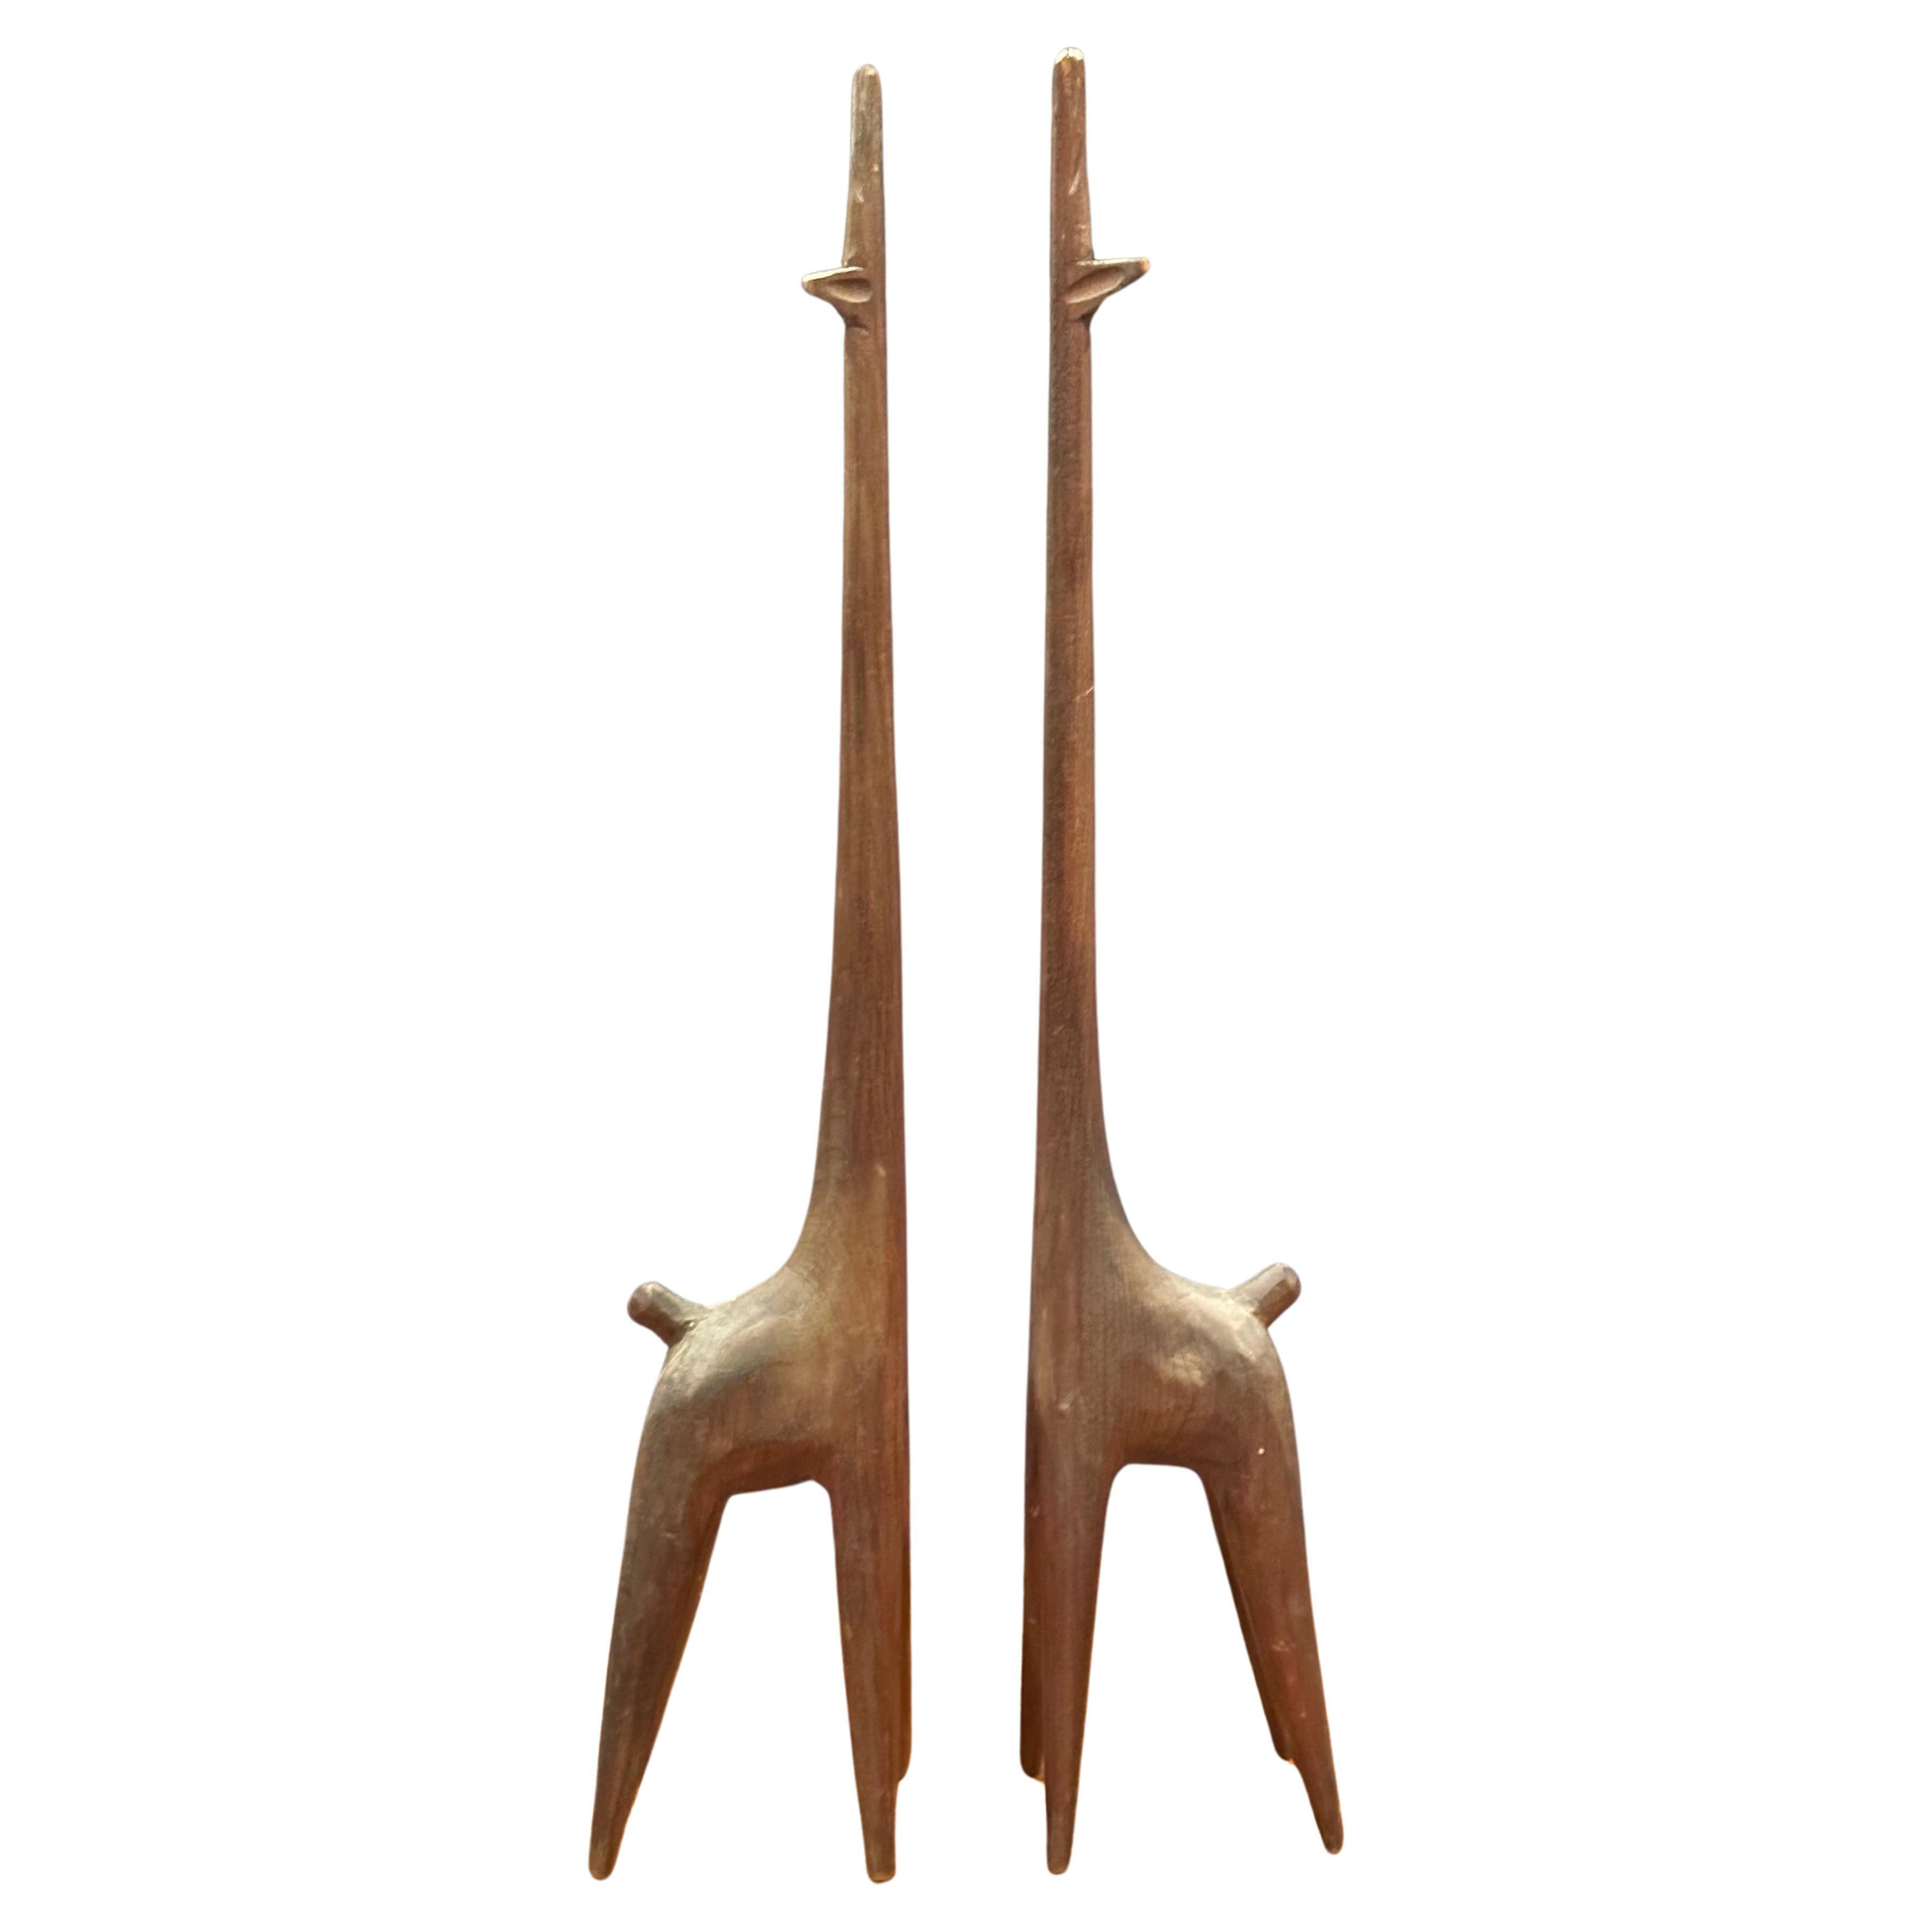 Superbe paire de sculptures modernistes de girafes en bois sculpté (noyer ?), vers les années 1960. Les sculptures sont sculptées à la main et mesurent : 2 